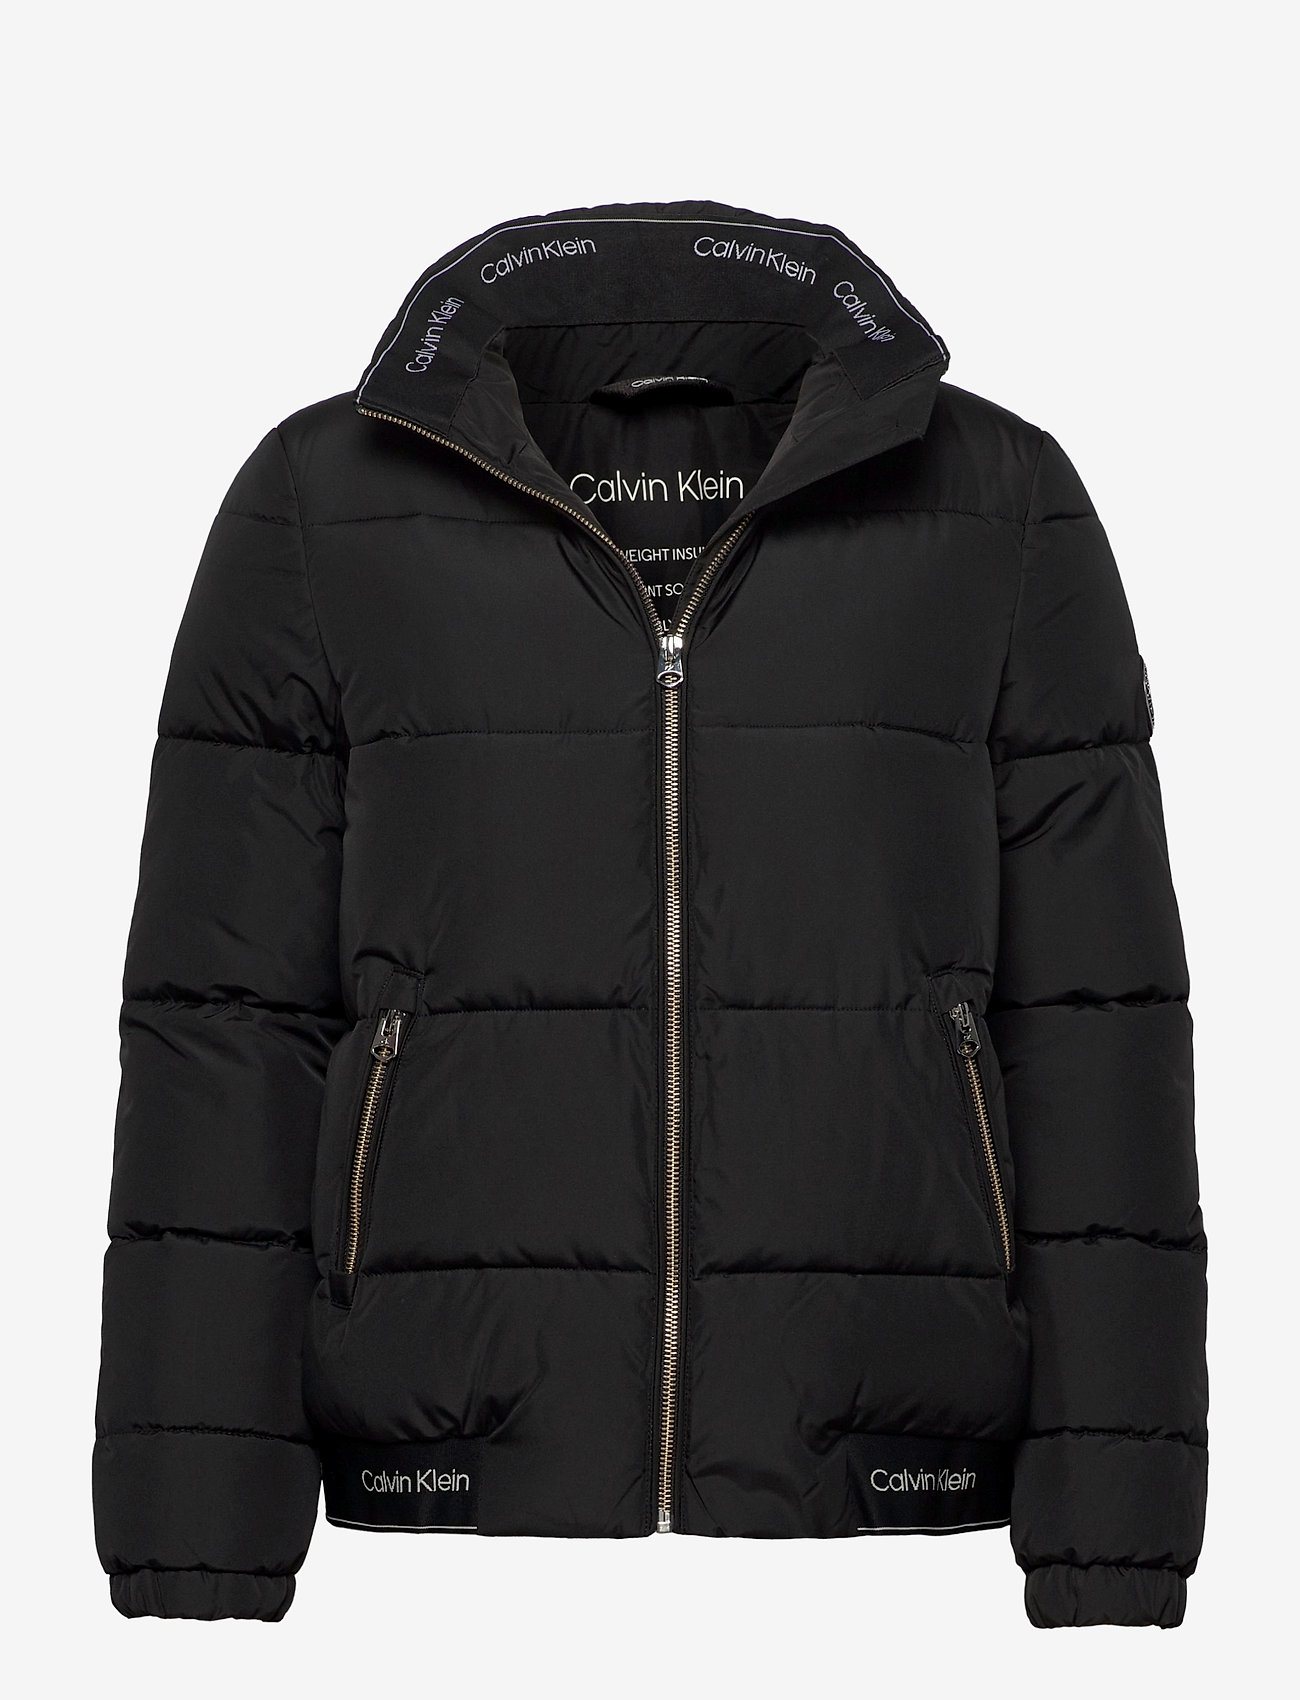 calvin klein puffer jacket sale